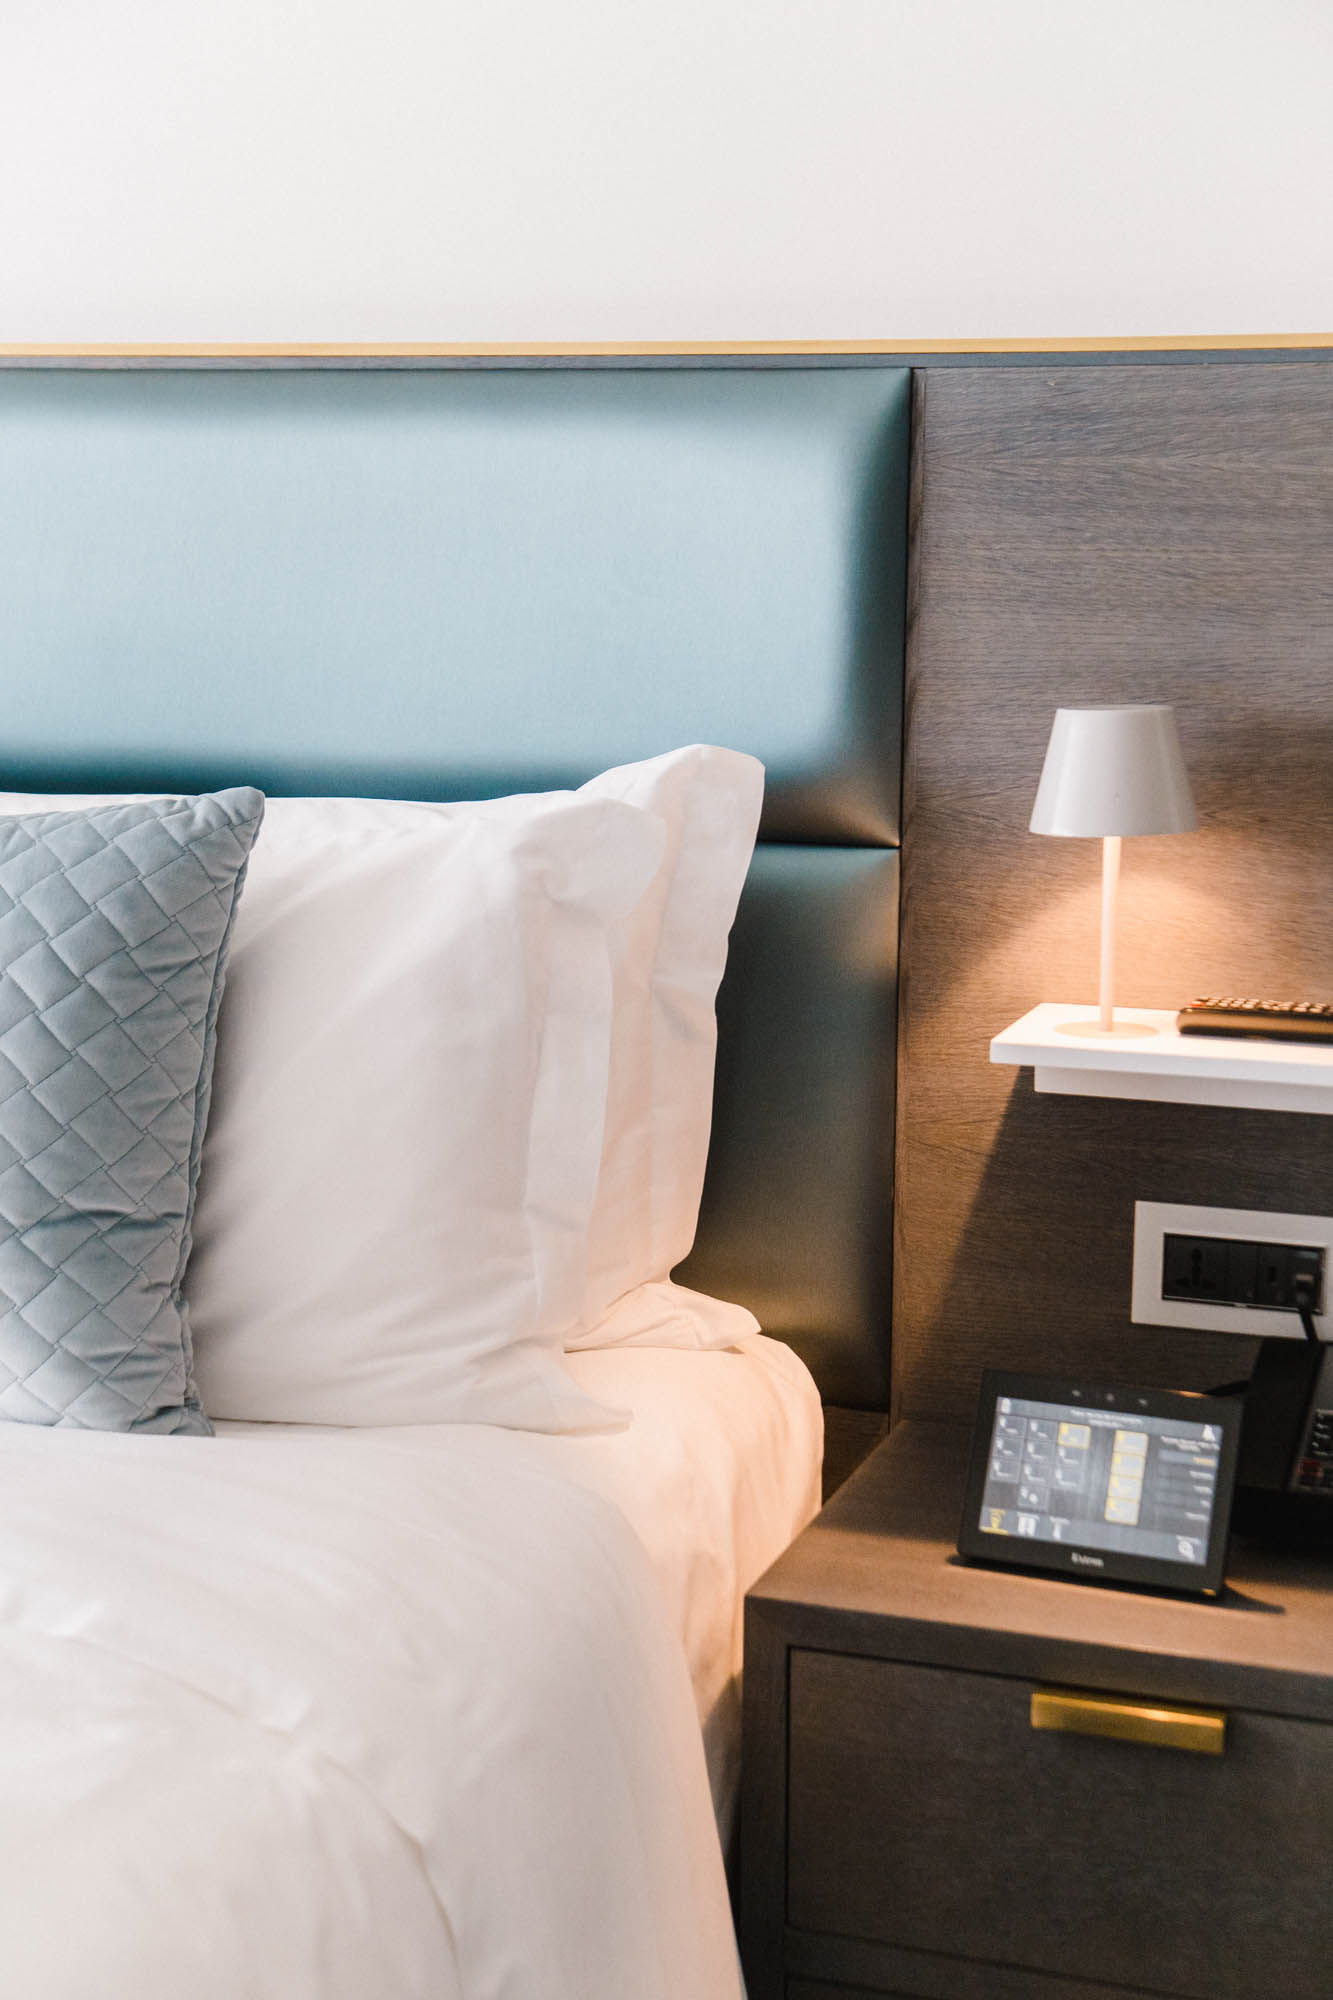 энергосберегающие технологии для гостиницы